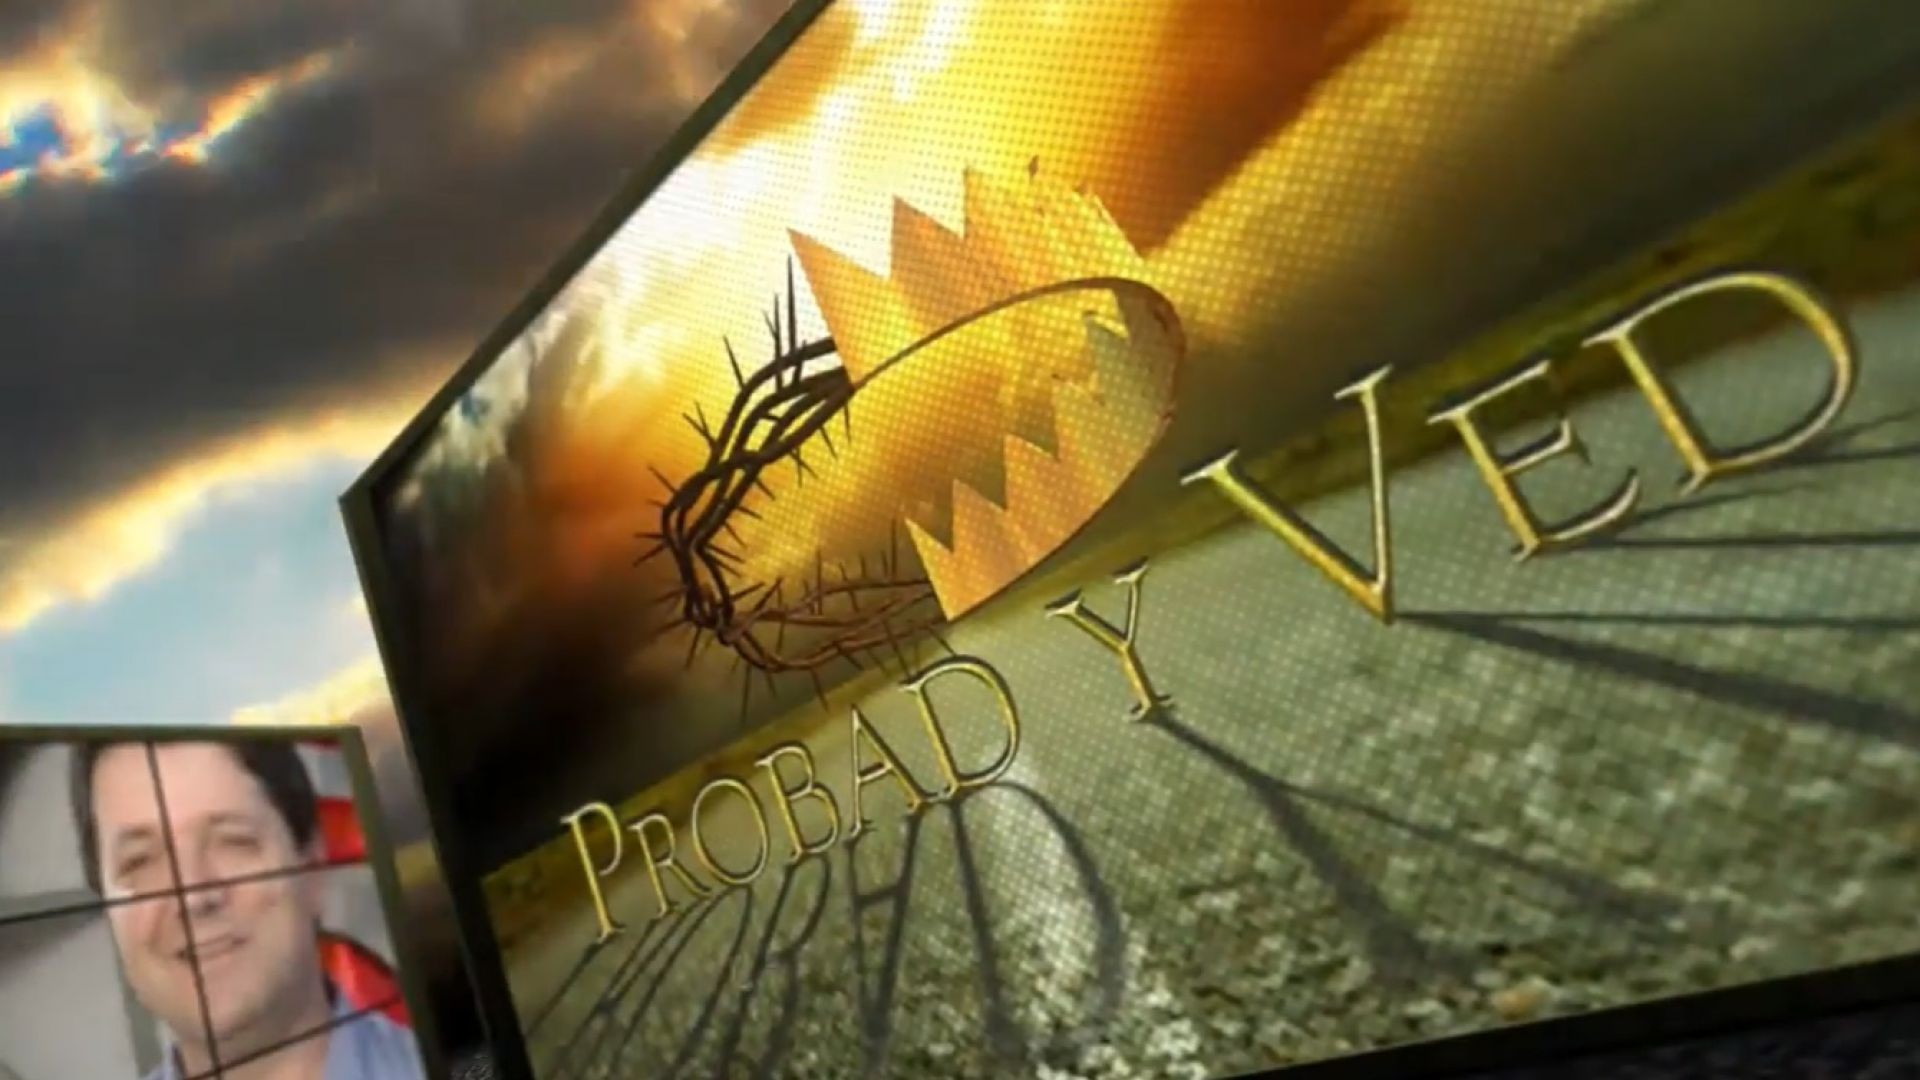 ⁣Probad y Ved 2012 - Alegria de servir a Dios